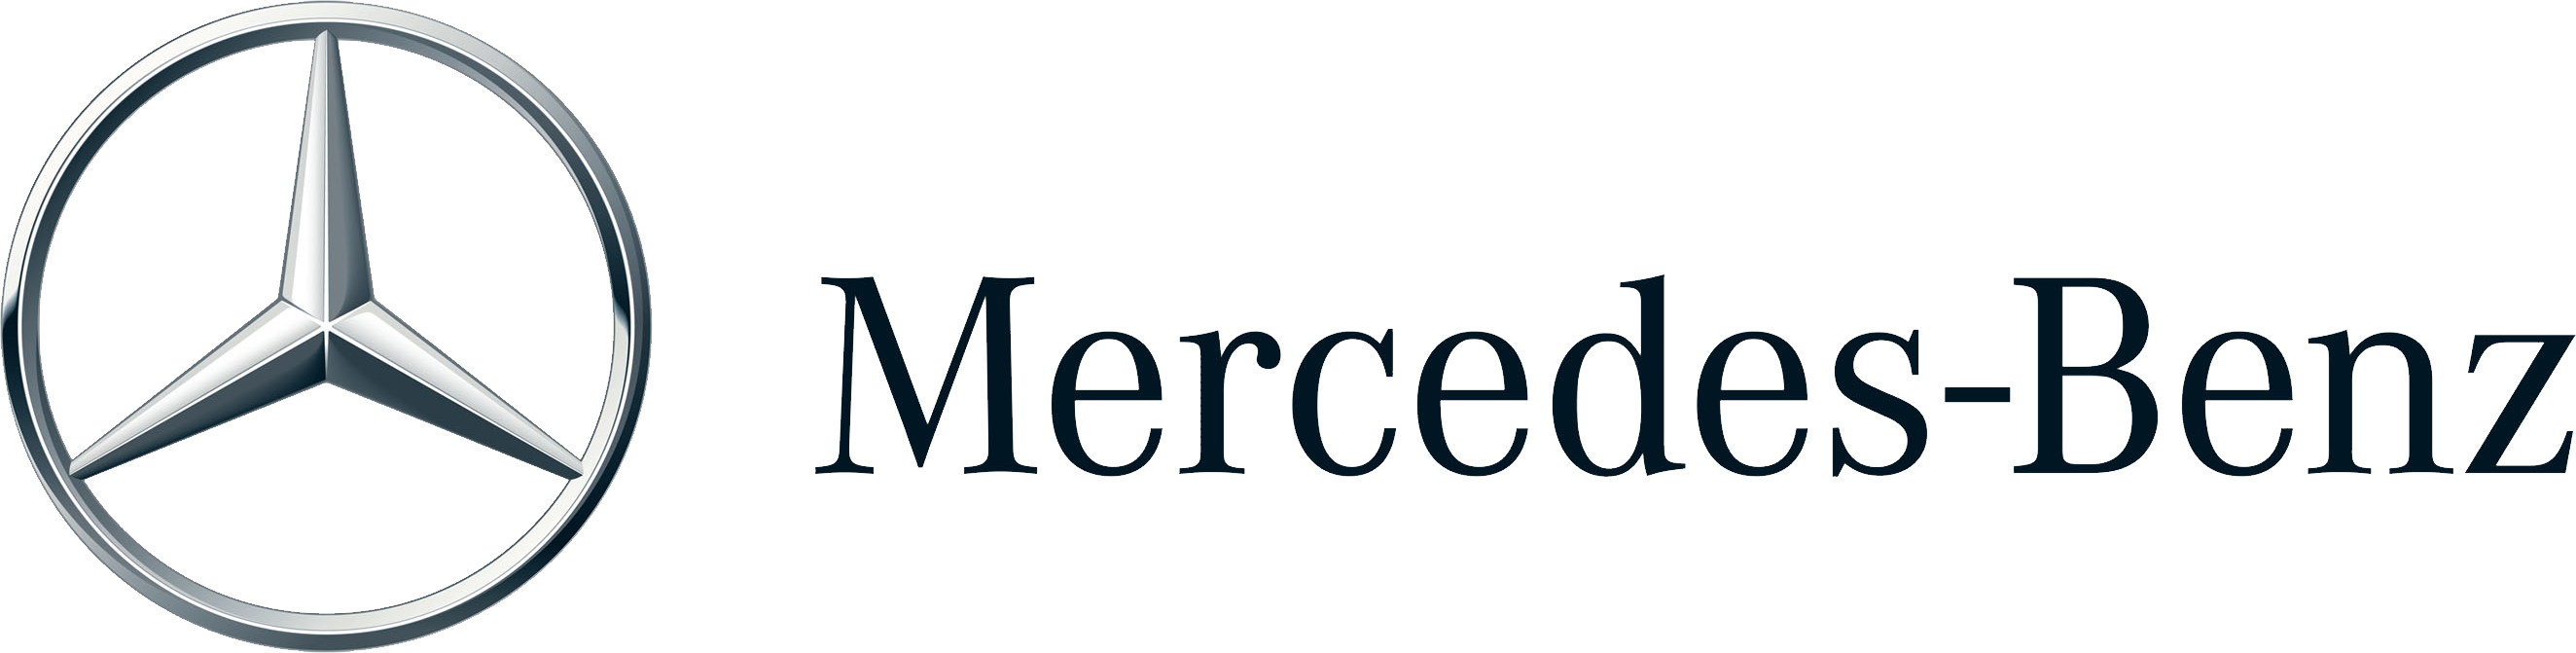 메르세데스 – 벤츠 로고 투명한 이미지